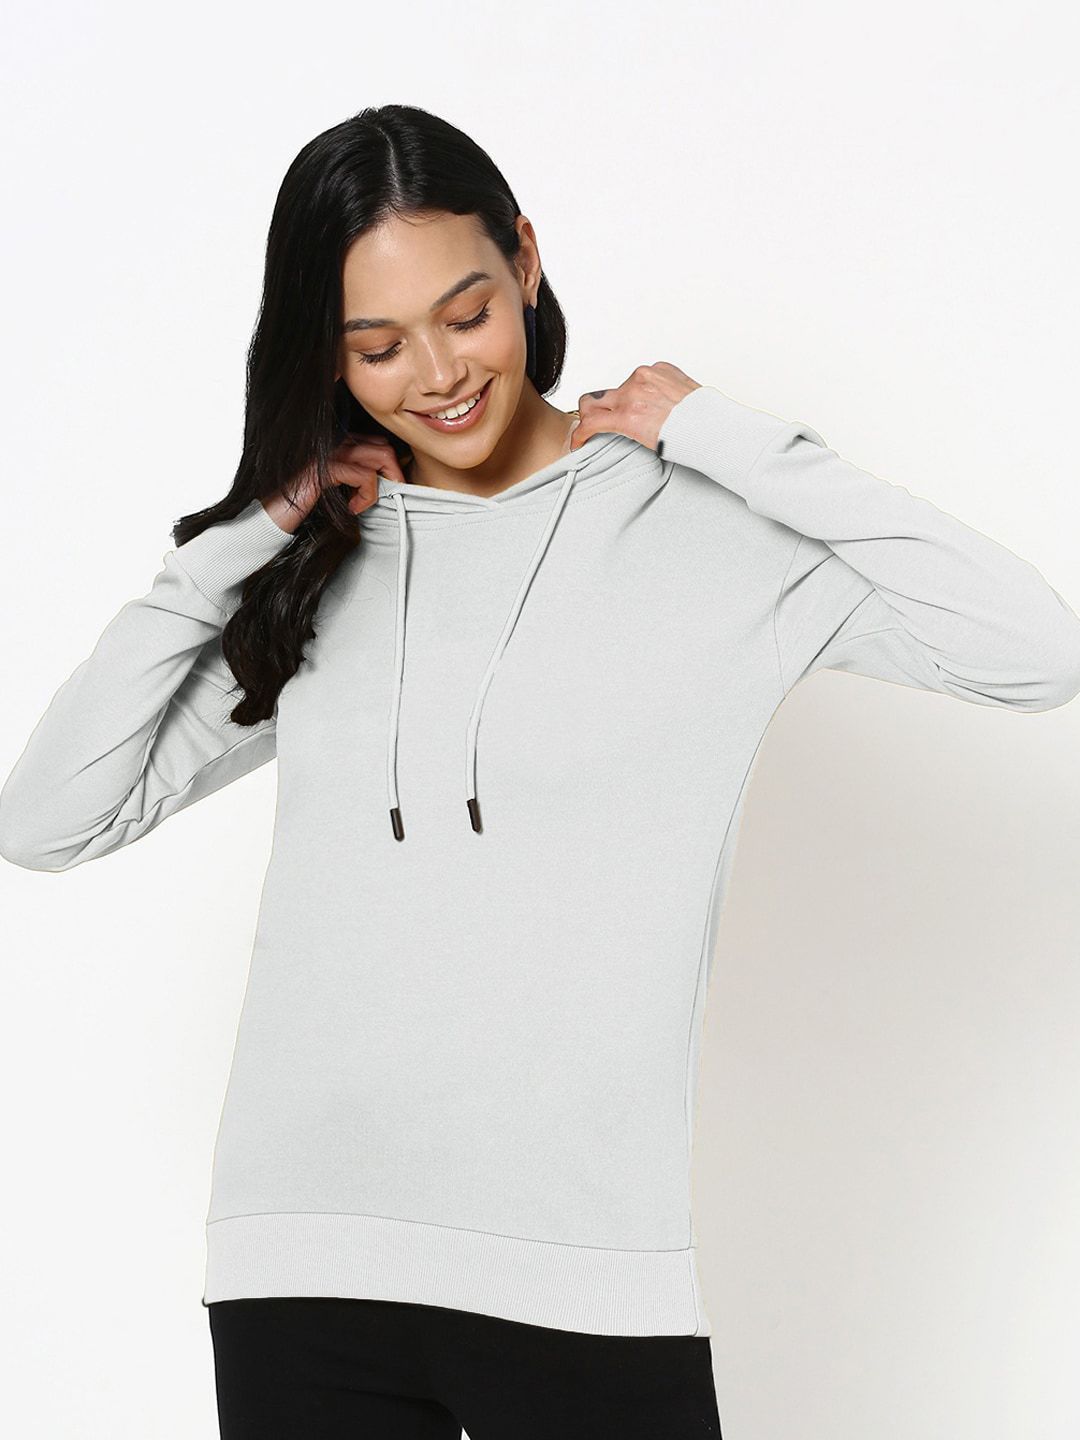 Bewakoof Women Grey Hooded Sweatshirt Price in India